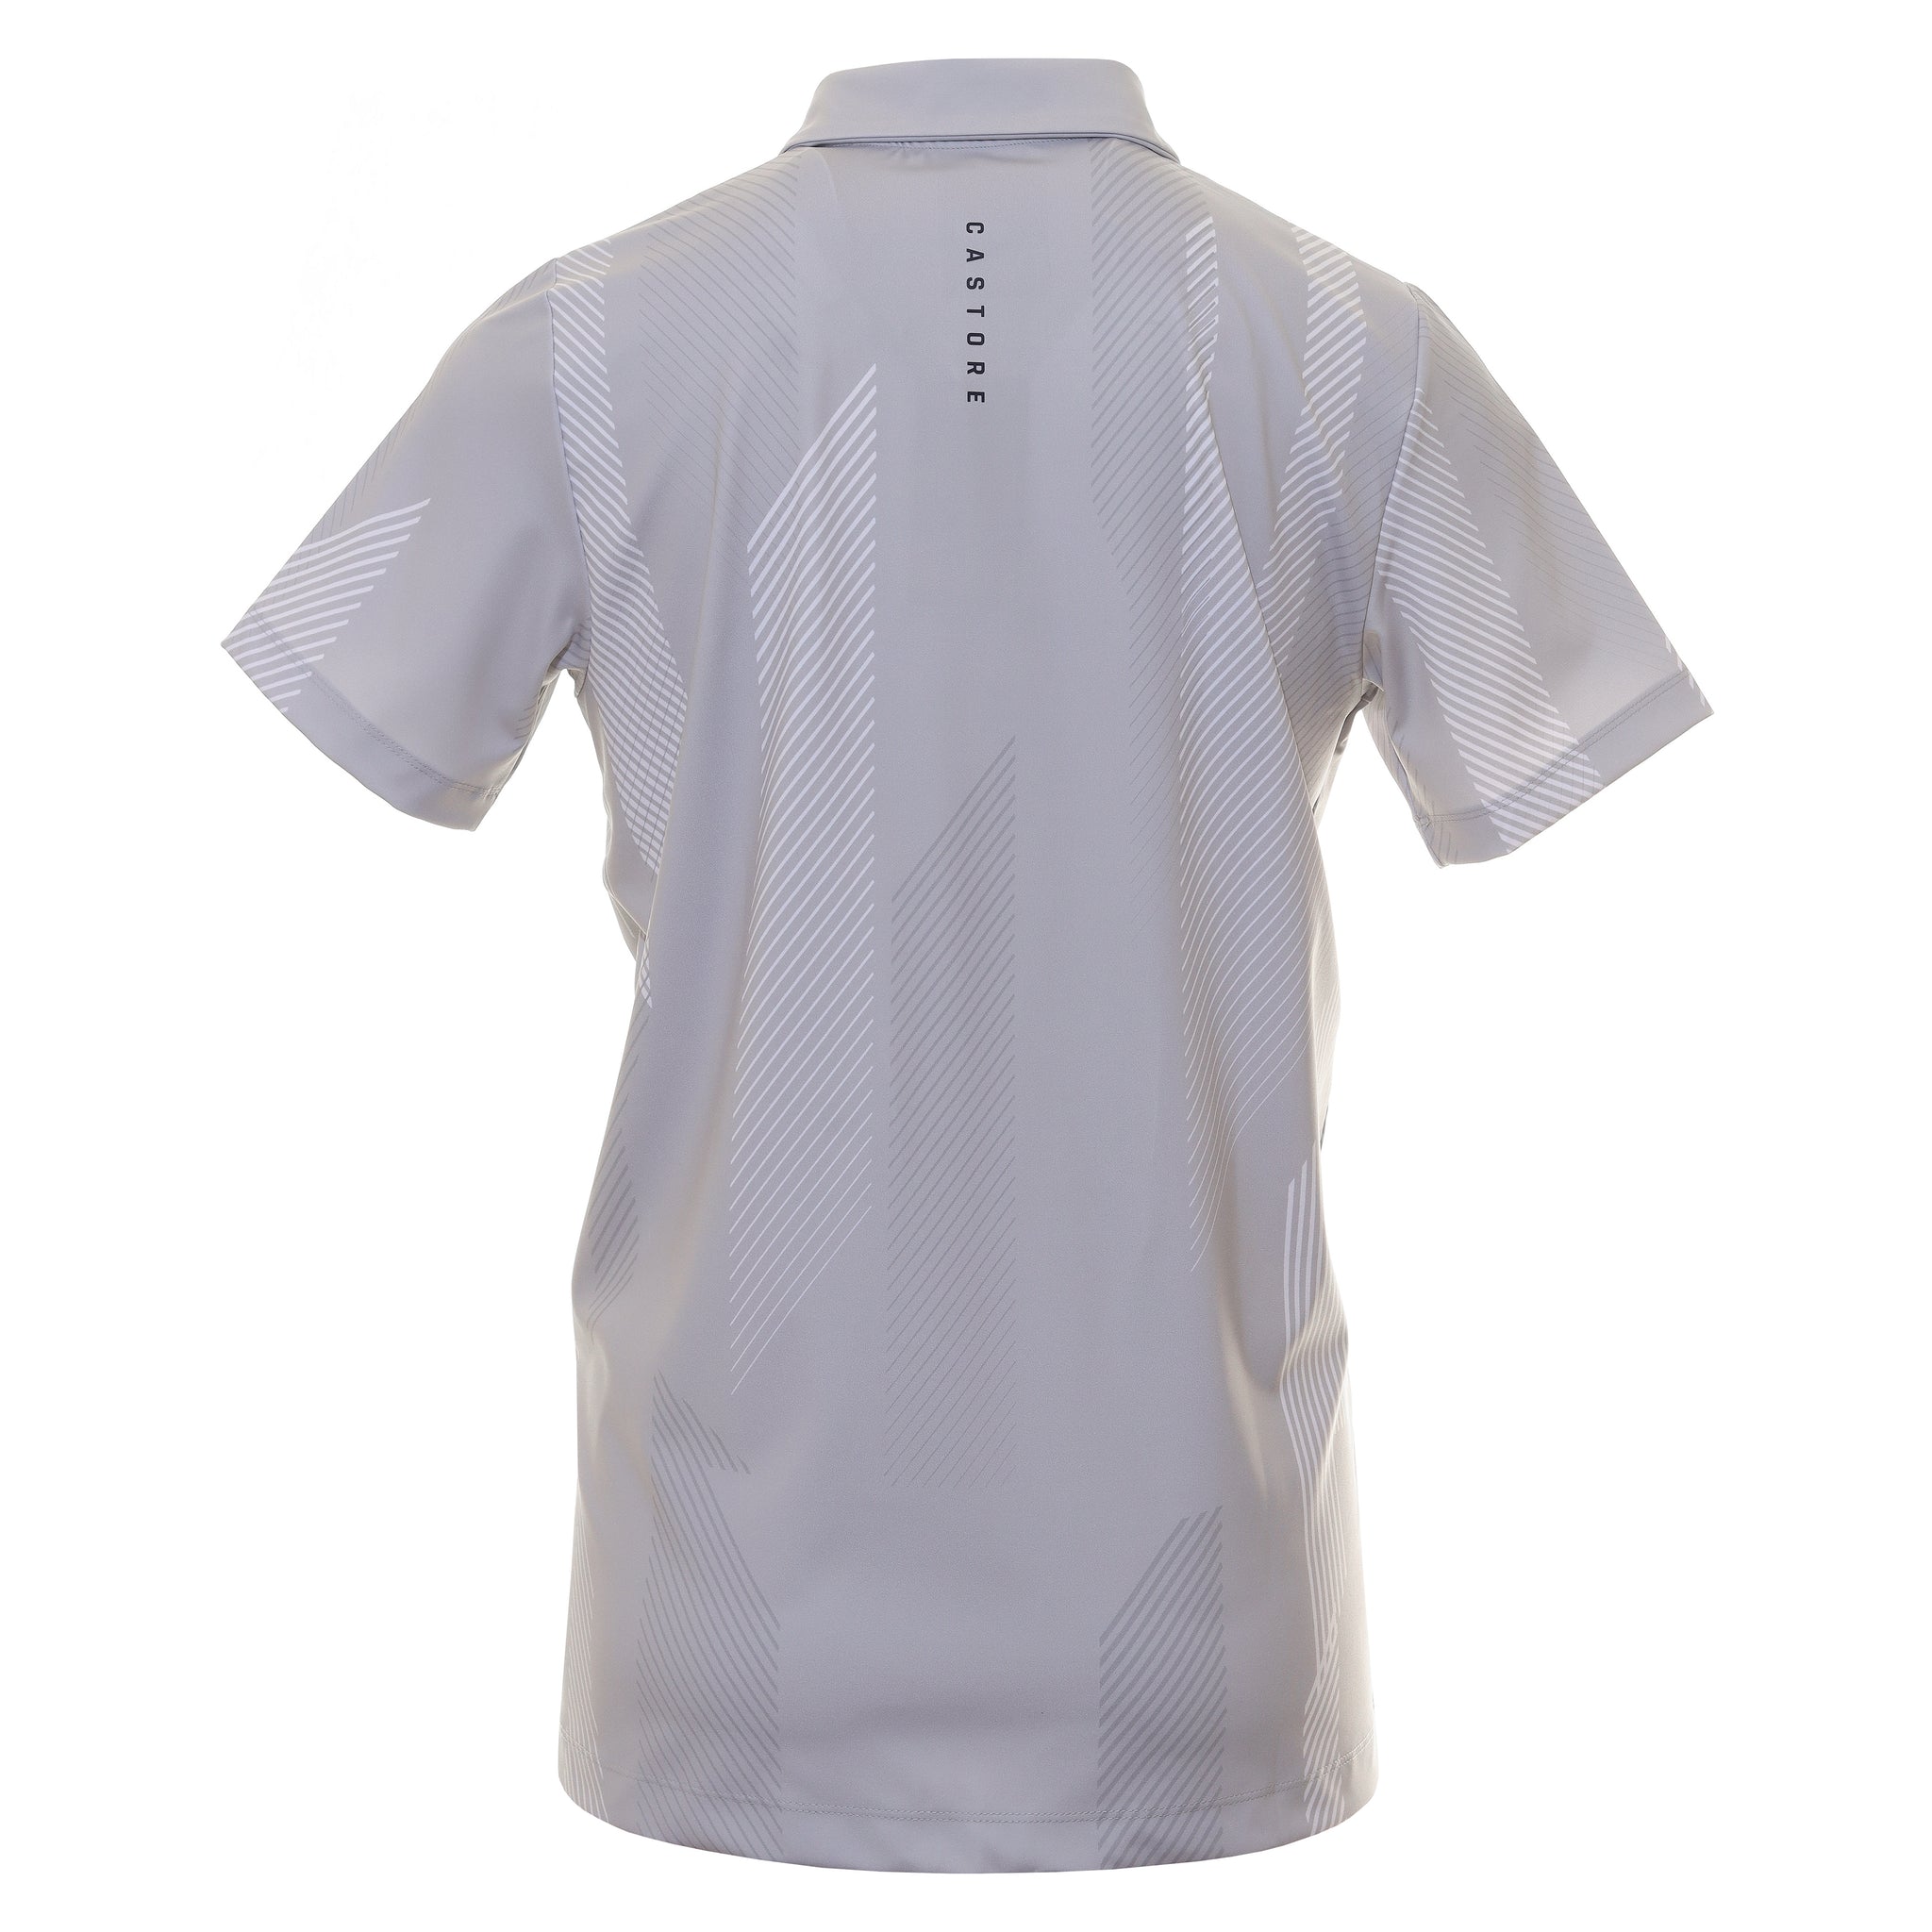 castore-printed-golf-polo-shirt-cma30362-stone-grey